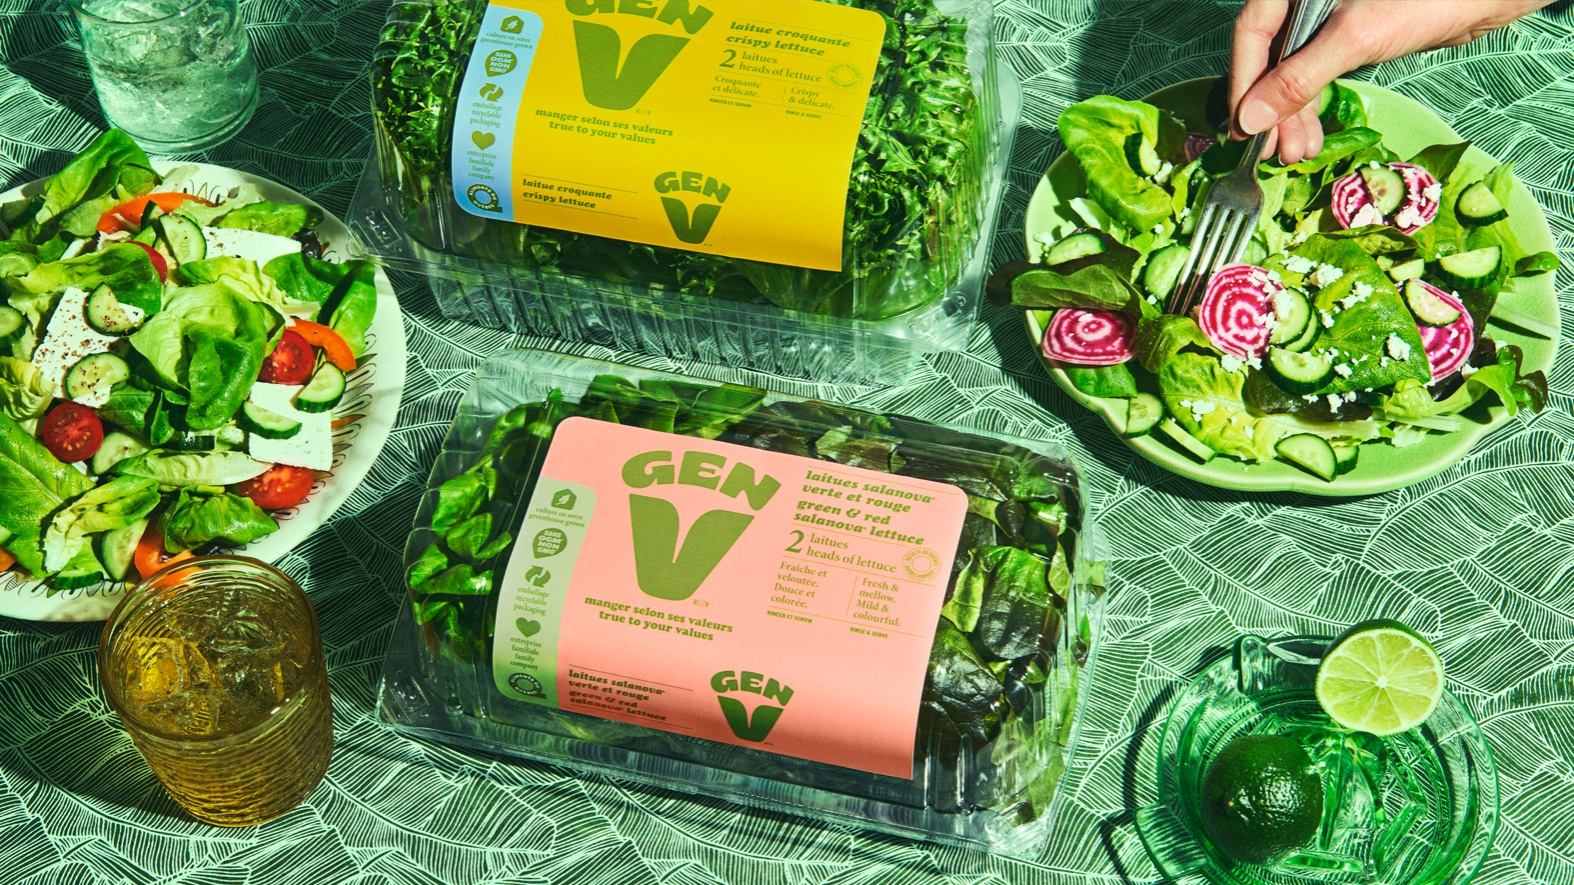 Gen V Packaging Makes Eating Veggies Look Like Fun